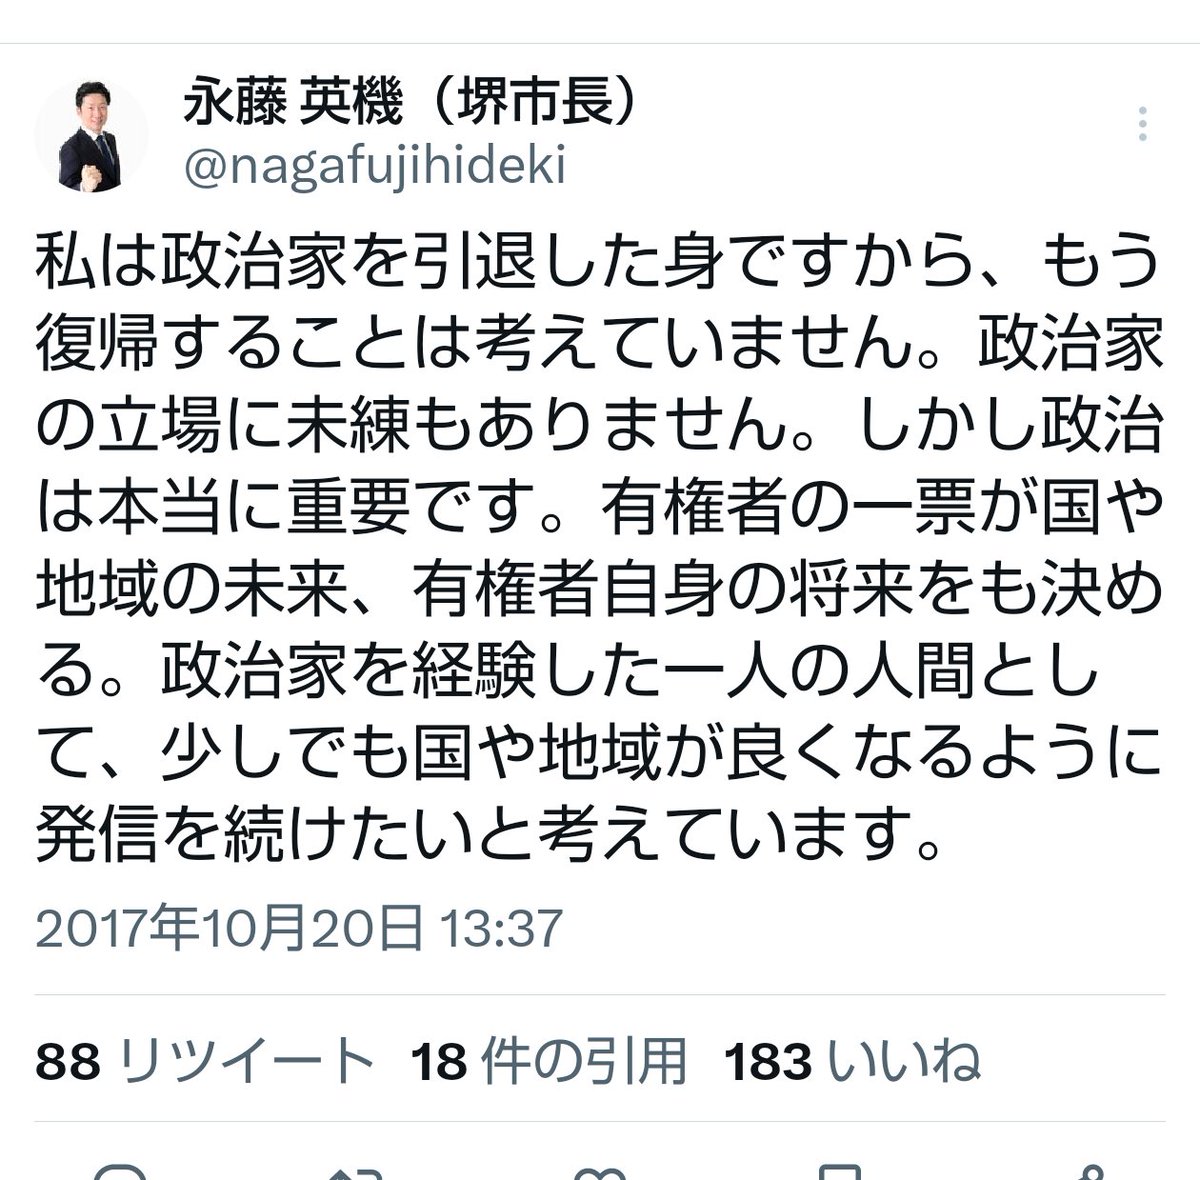 大阪が好きやねん＃カジノ反対＠維新にこれ以上大阪を壊されてたまるか！ on Twitter: "RT @Xha95NSJ5N87eQy: いや